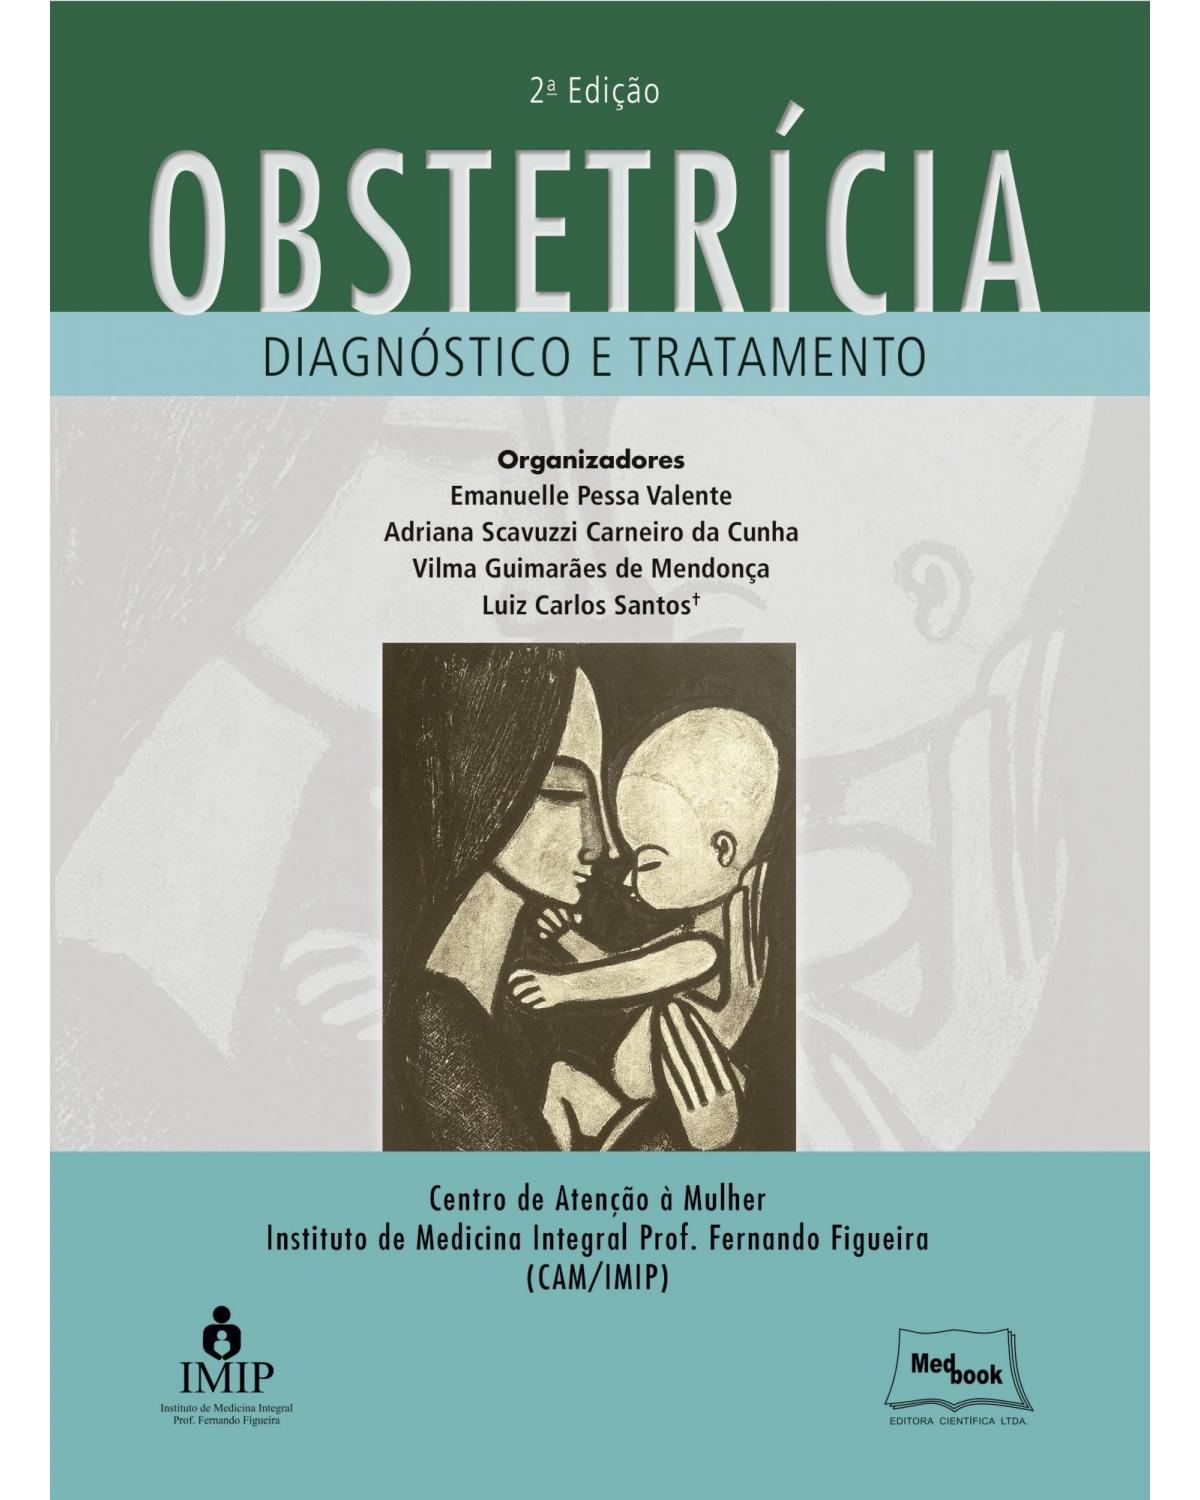 Obstetrícia – Diagnóstico e tratamento - 2ª Edição | 2018